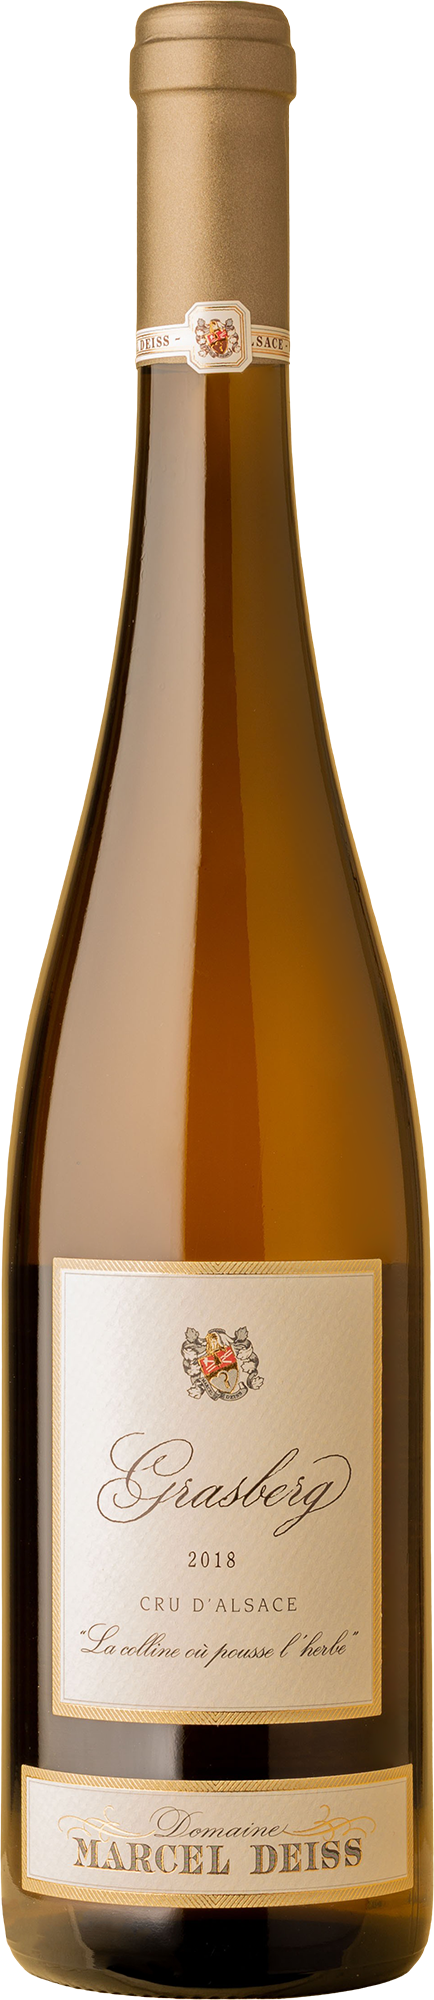 Marcel Deiss - Grasberg Pinot Blanc / Gewurtztraminer / Riesling 2018